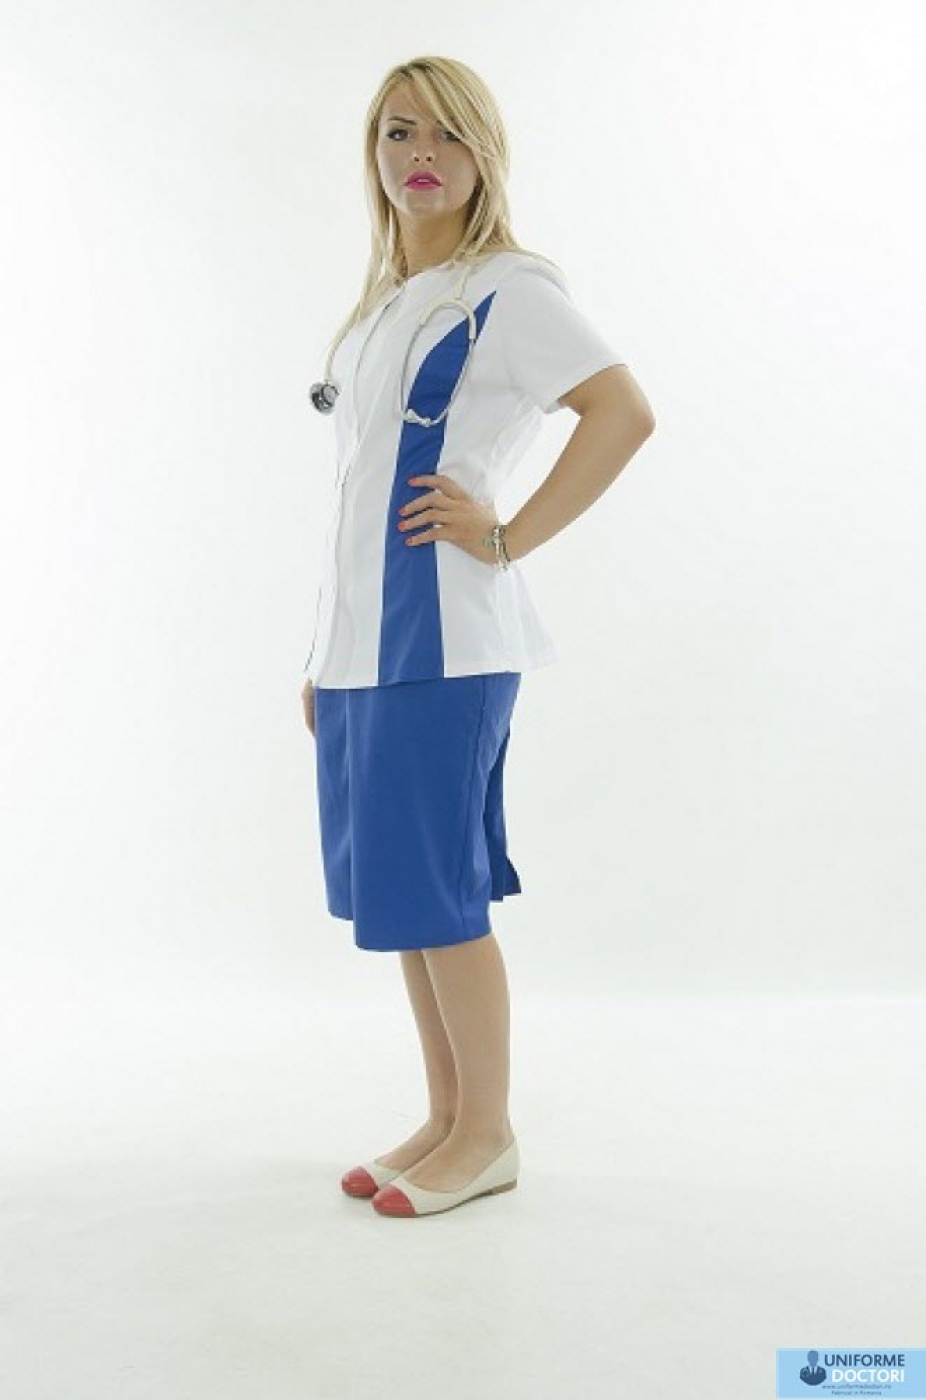 Uniforme medicale â€“ Halat medical cu maneca scurta si fermoar, model bicolor